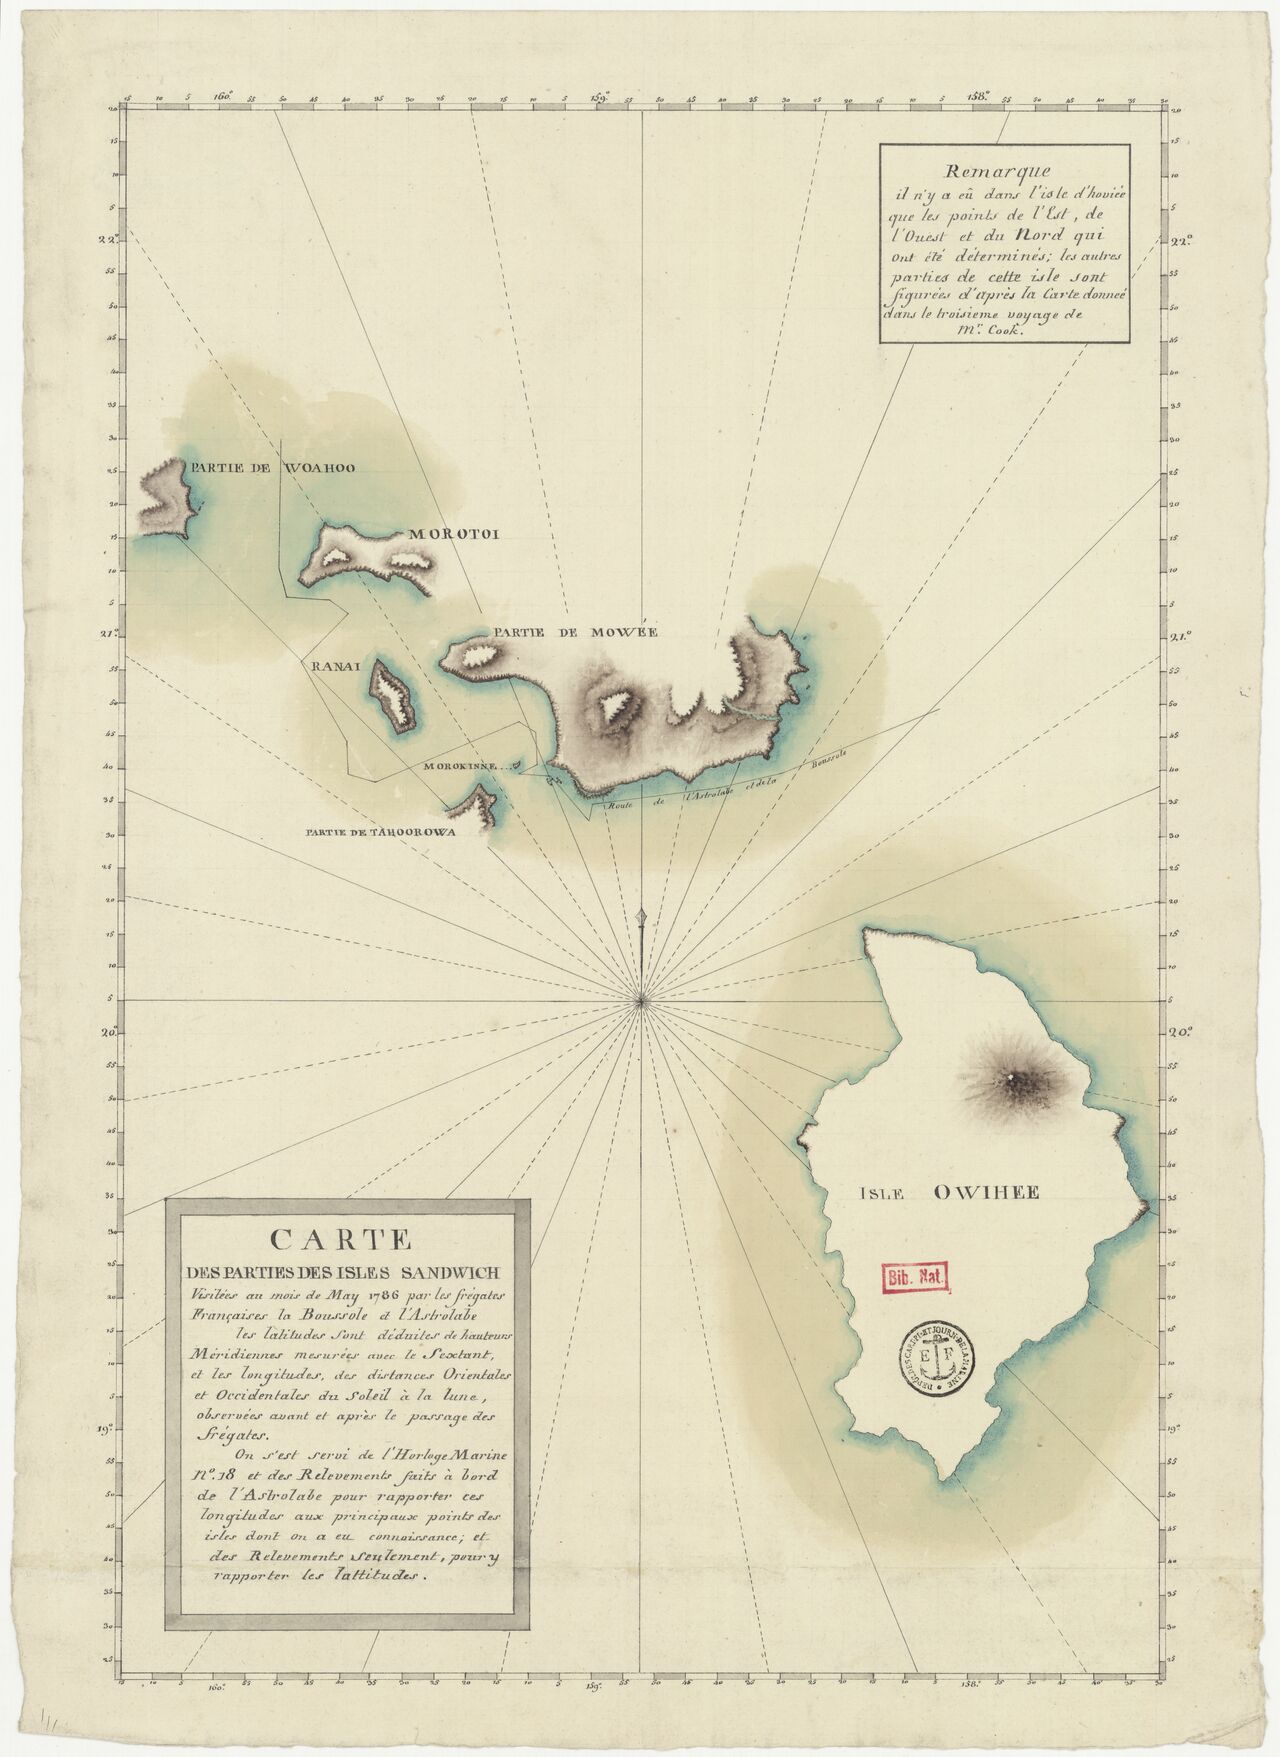 1786 Carte des parties des isles sandwich visitées au mois de May 1786 par les frégates françaises la Bousssole et l'Astrolabe